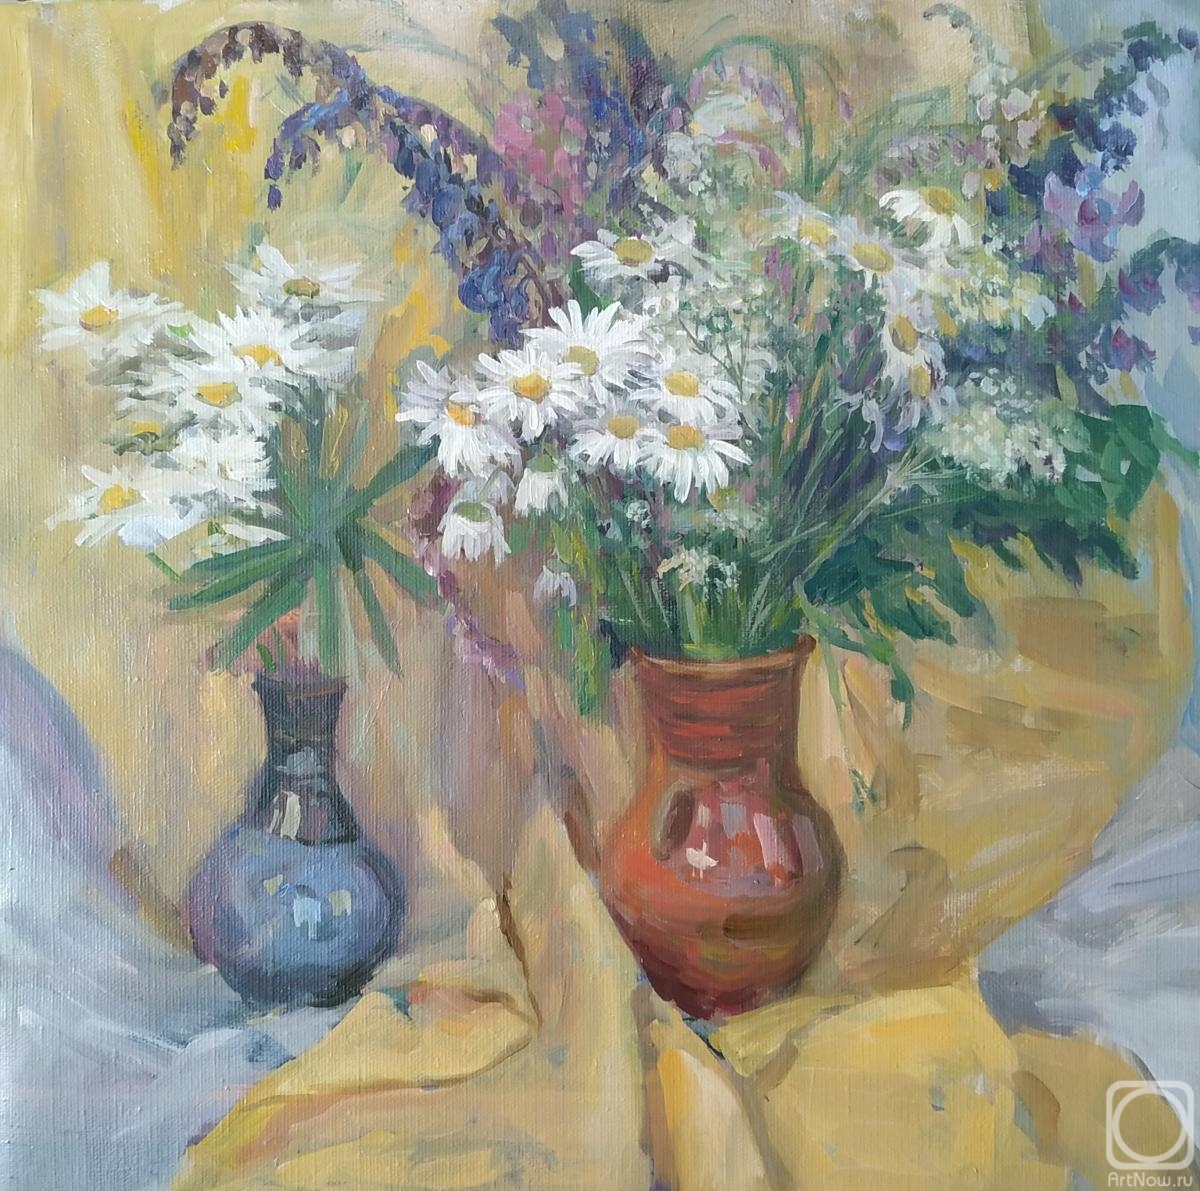 Antonova Galina. Wildflowers